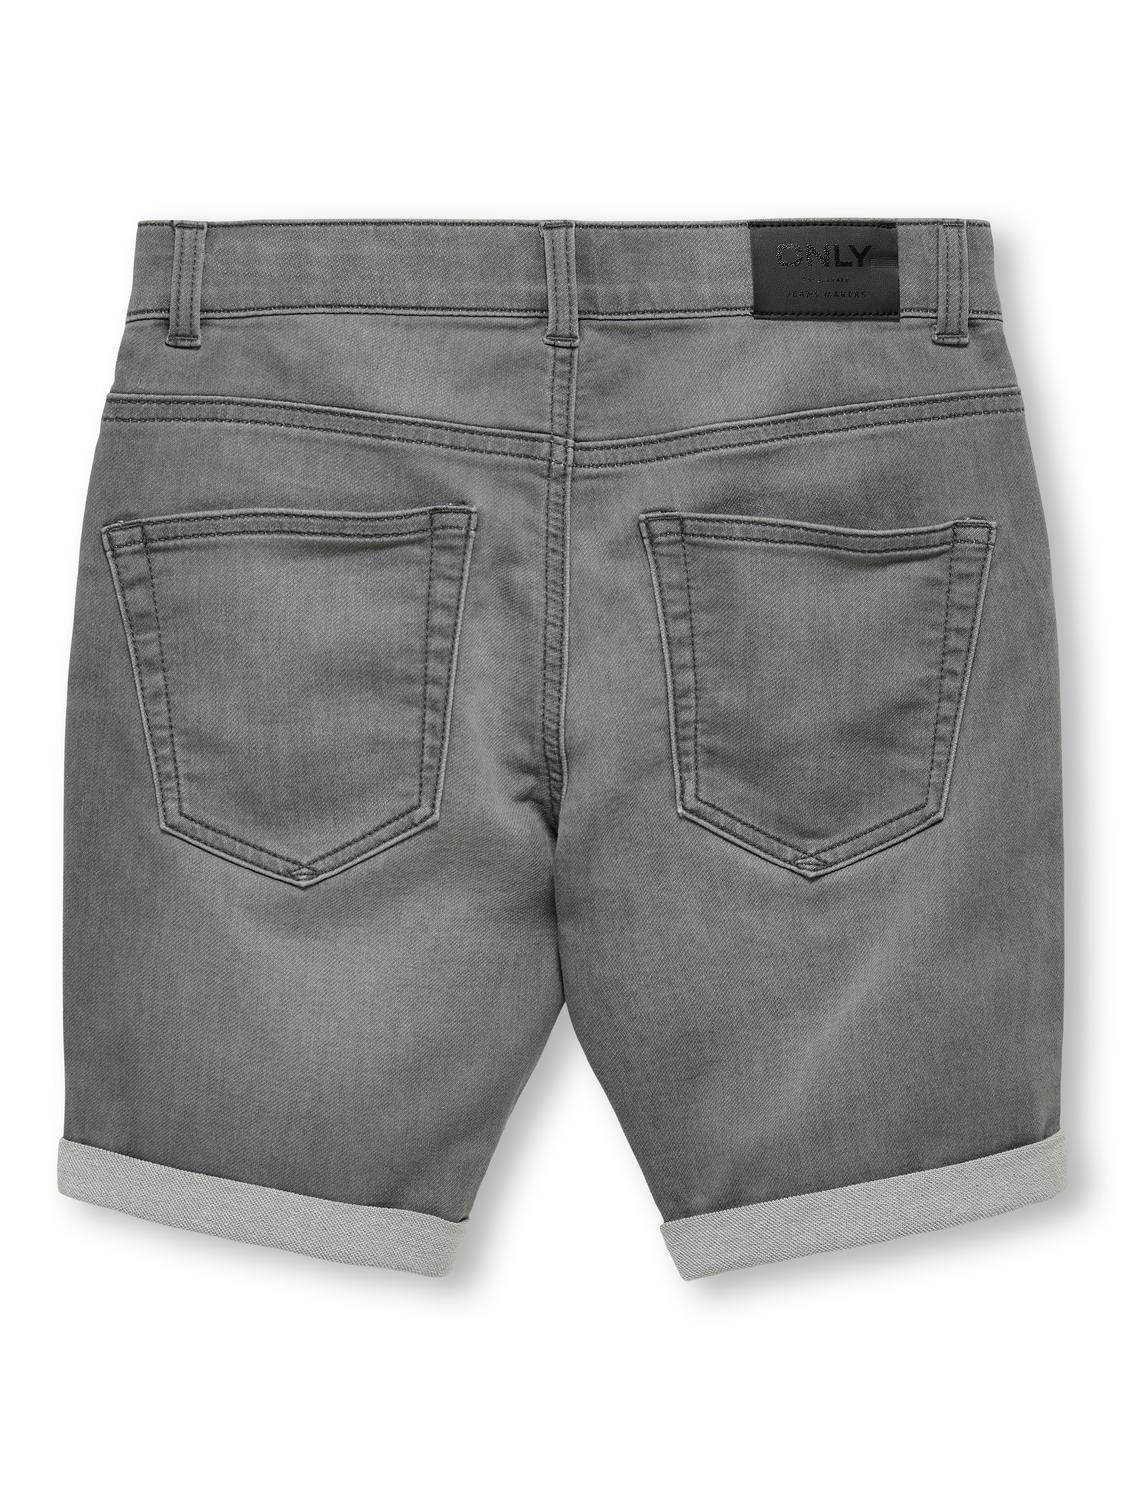 ONLY Skinny Fit Oppbrettskanter Jeans -Light Grey Denim - 15283232